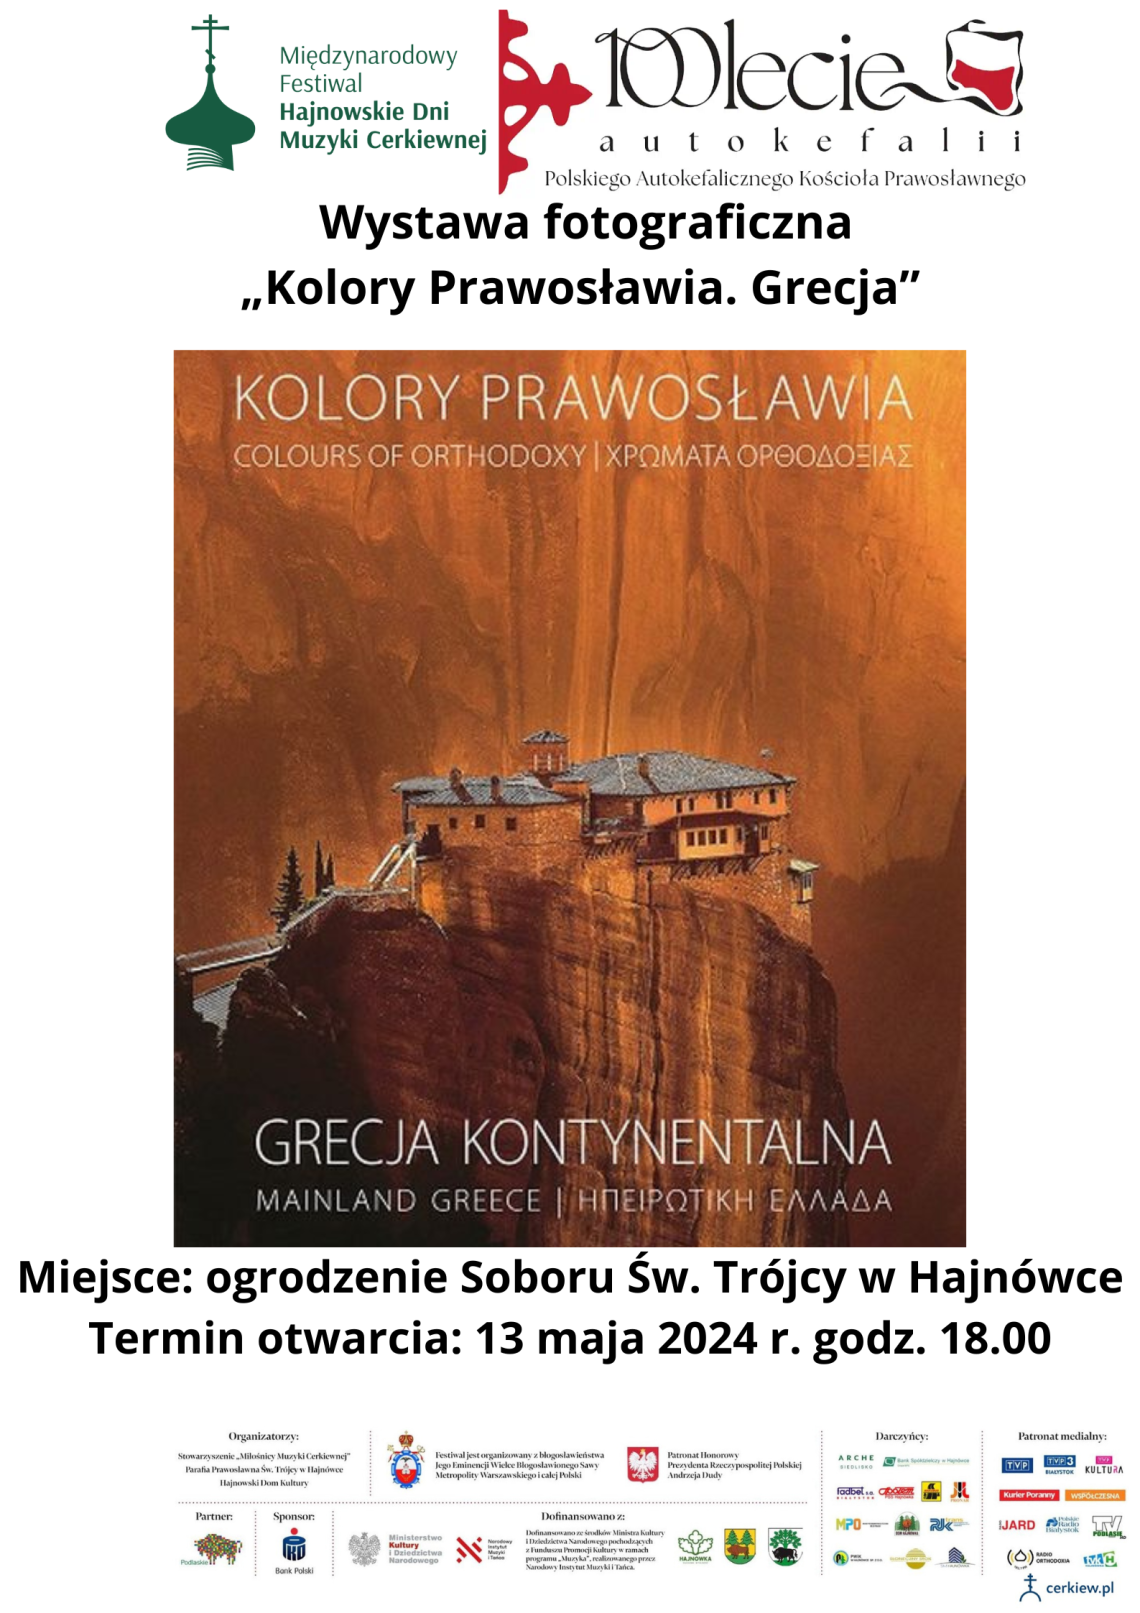 plakat zapowiadający wystawę, w tle zdjęcie greckiej cerkwi na wzgórzu